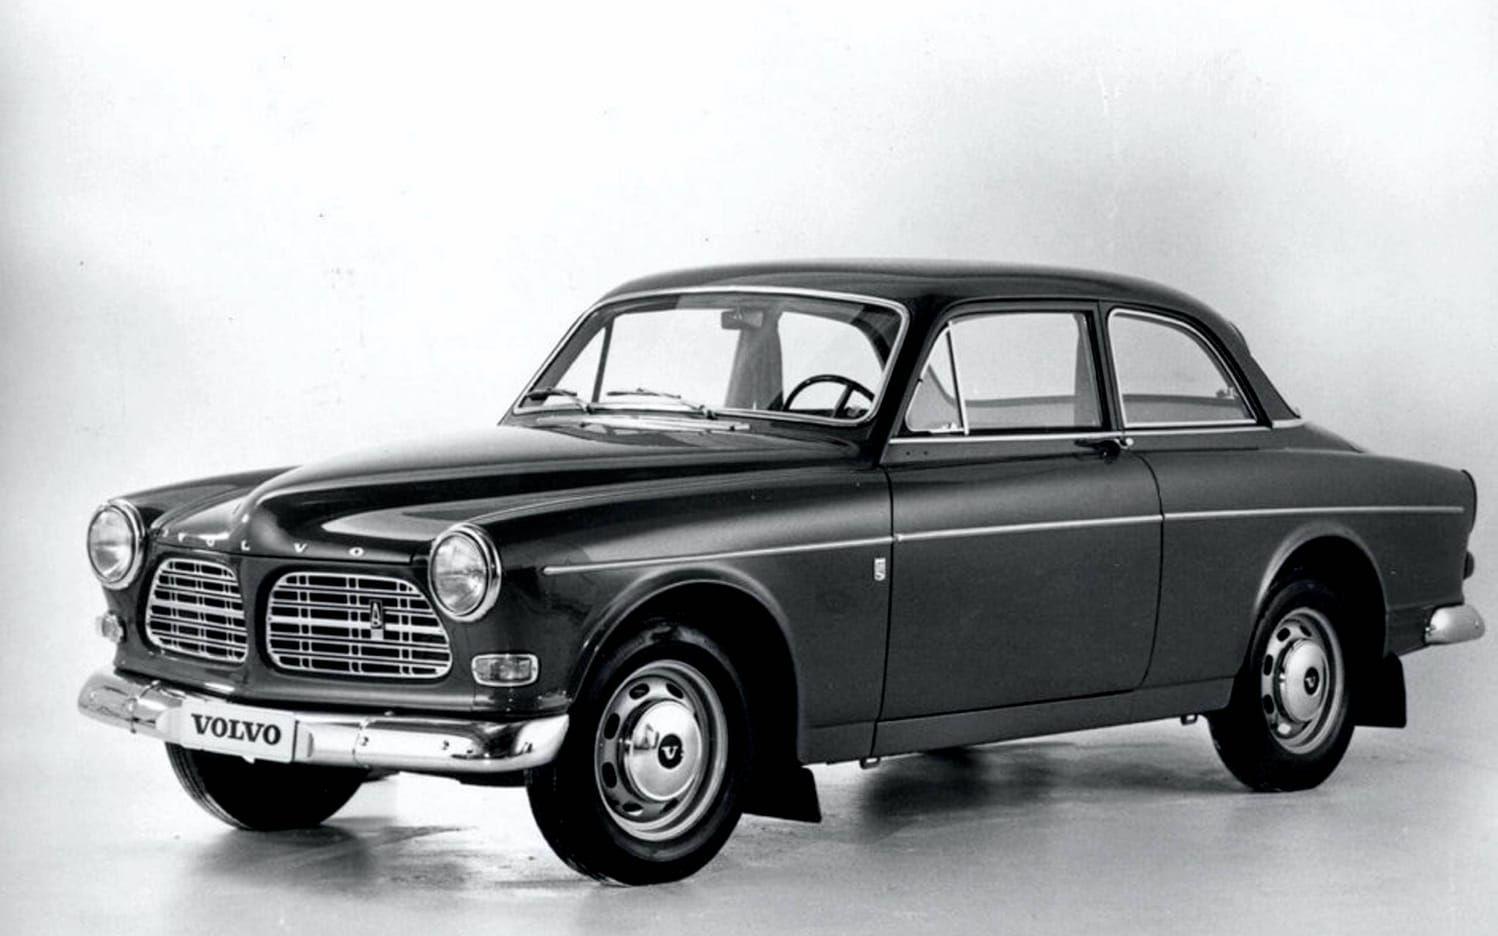 1956. Volvo Amazon lanseras. Blir folkhemsbilen framför andra. Säljs i närmare 700 000 exemplar fram till 1970.